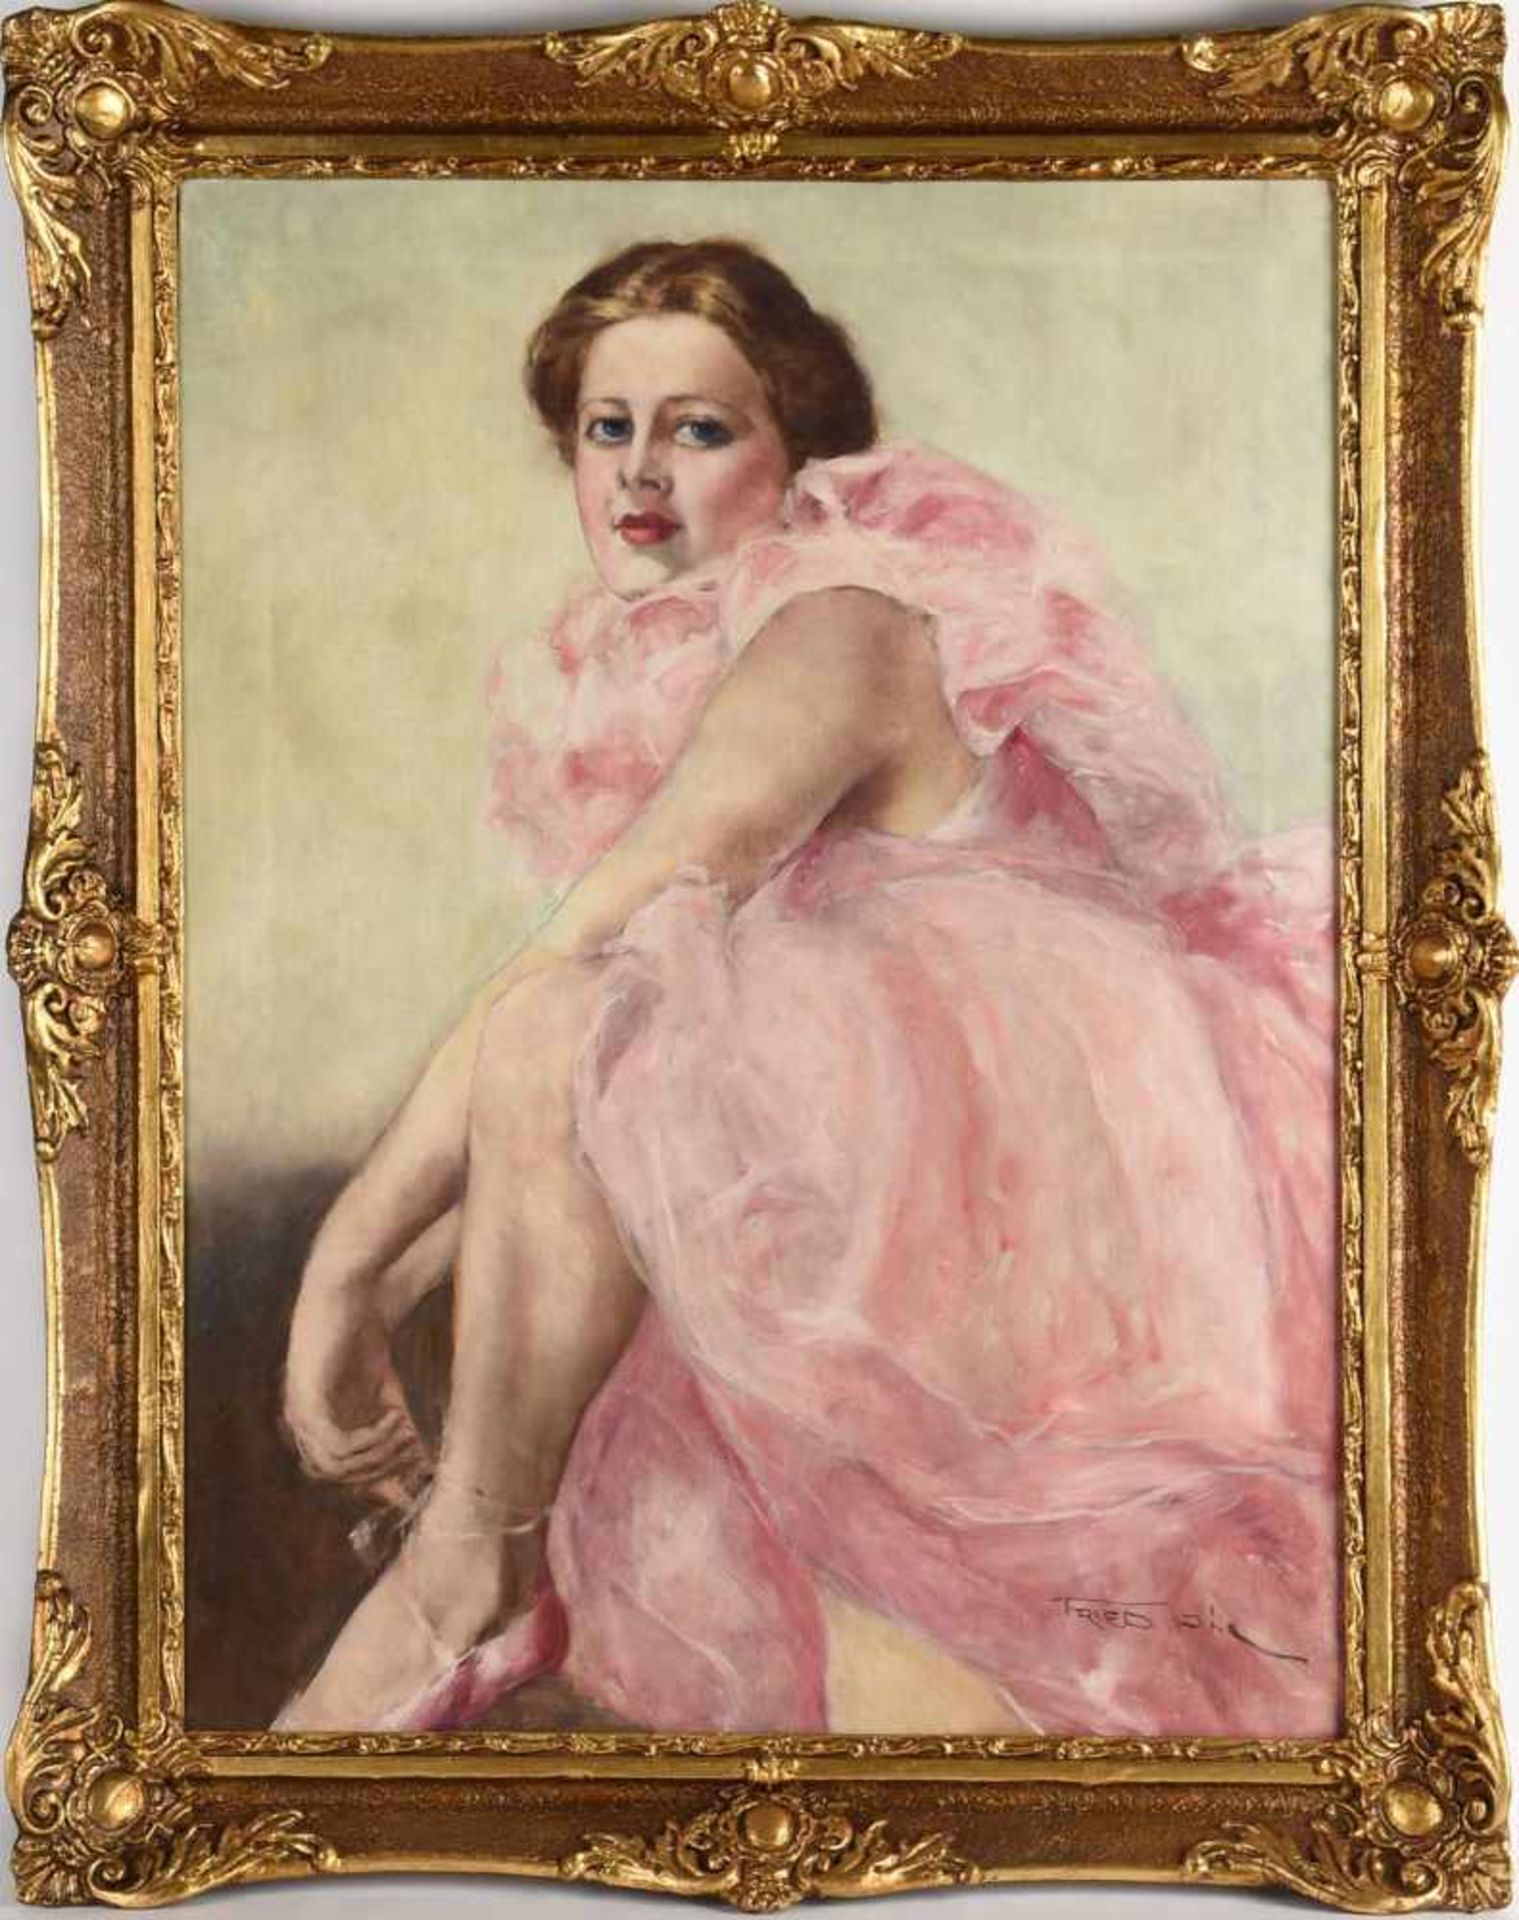 Fried, Pál (1893 Budapest - 1976 New York) Öl/Lwd., Tänzerin im rosafarbenen Kostüm, rechts unten - Bild 3 aus 4